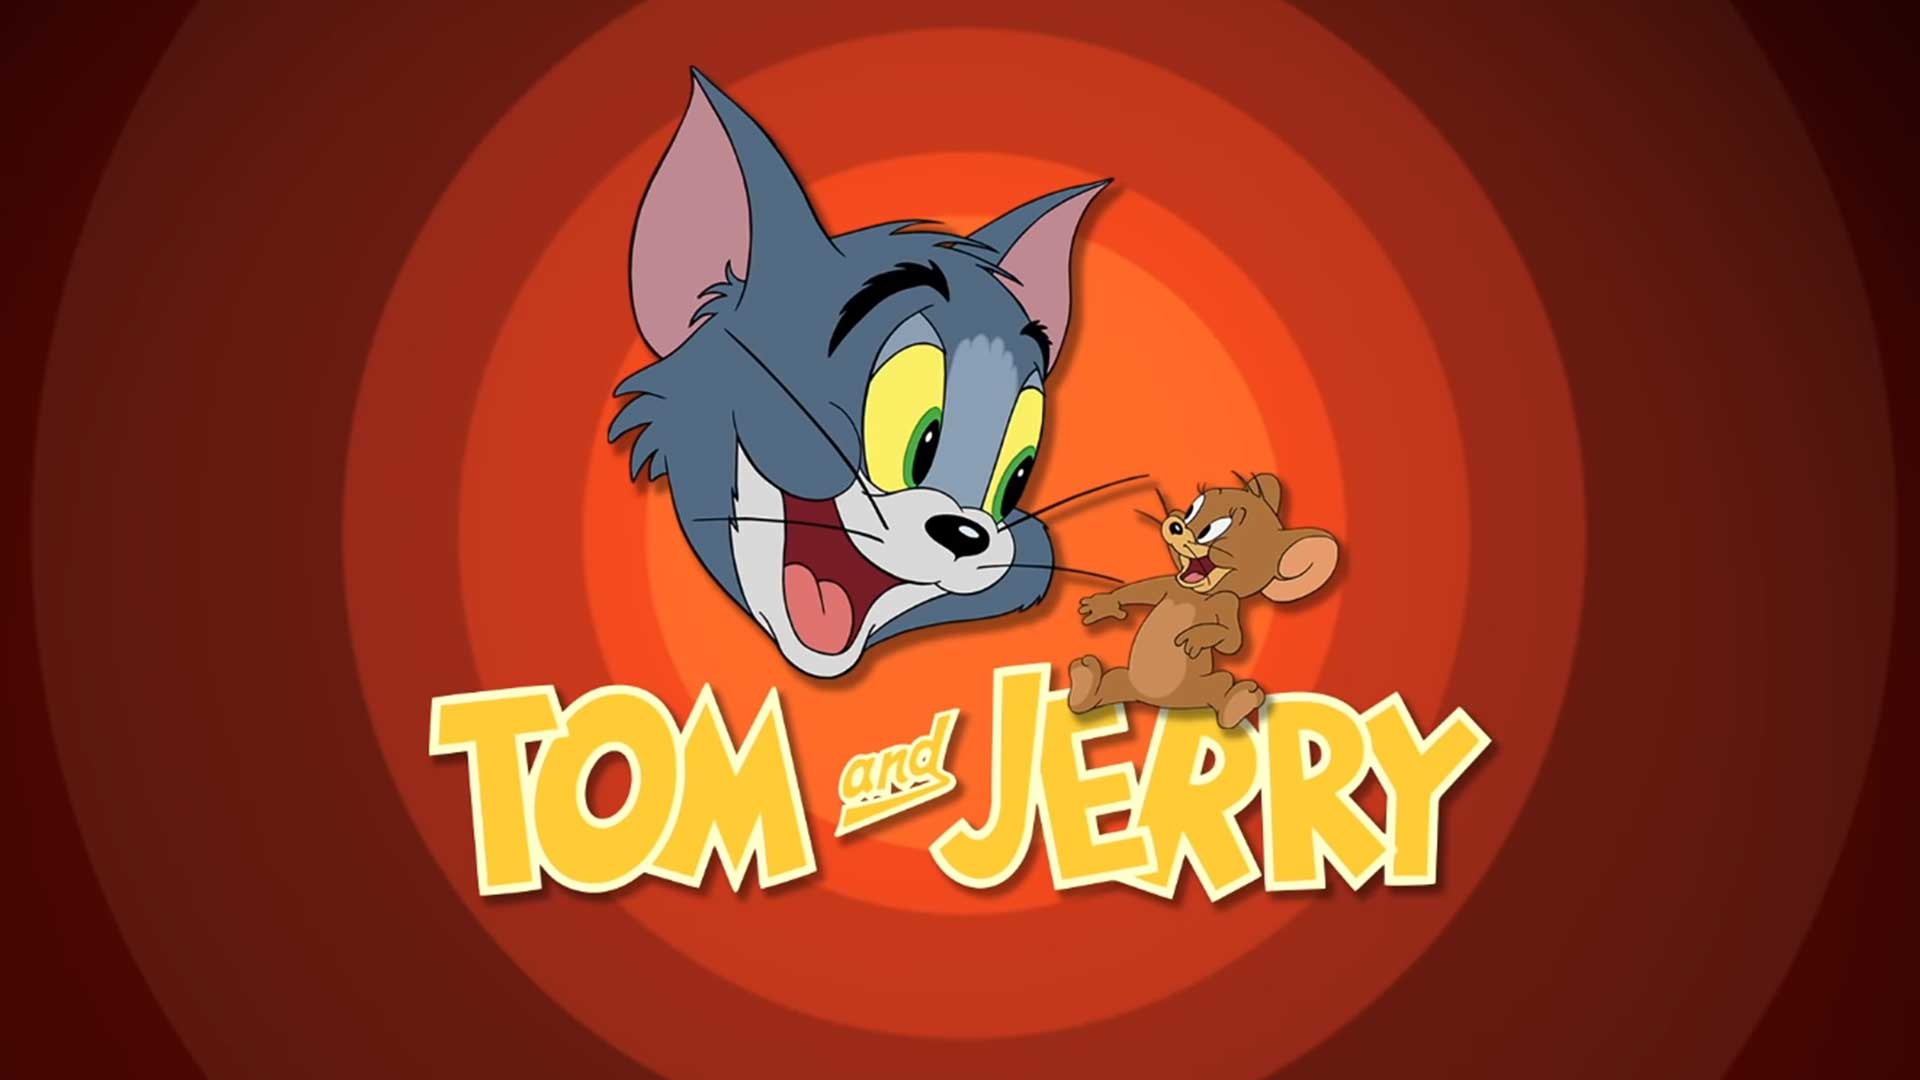 Том и Джерри – 10 серия «Одинокий мышонок» / Tom and Jerry